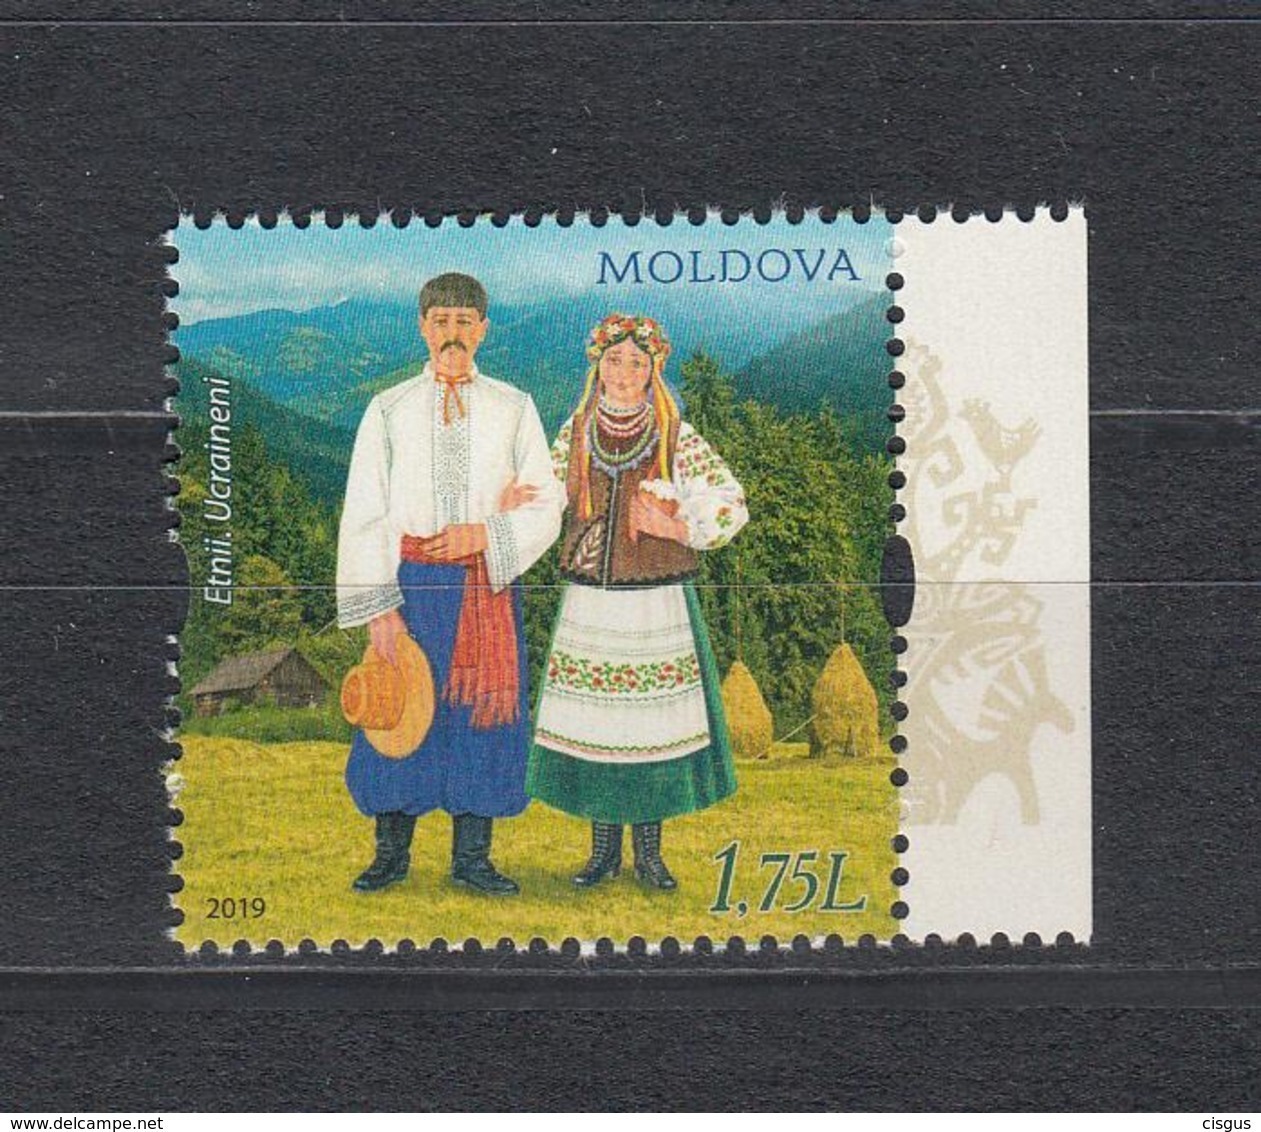 Moldova Moldawien MNH** 2019  Costuemes Ethnic Groupe Ukraine  Mi 1084 - Moldawien (Moldau)